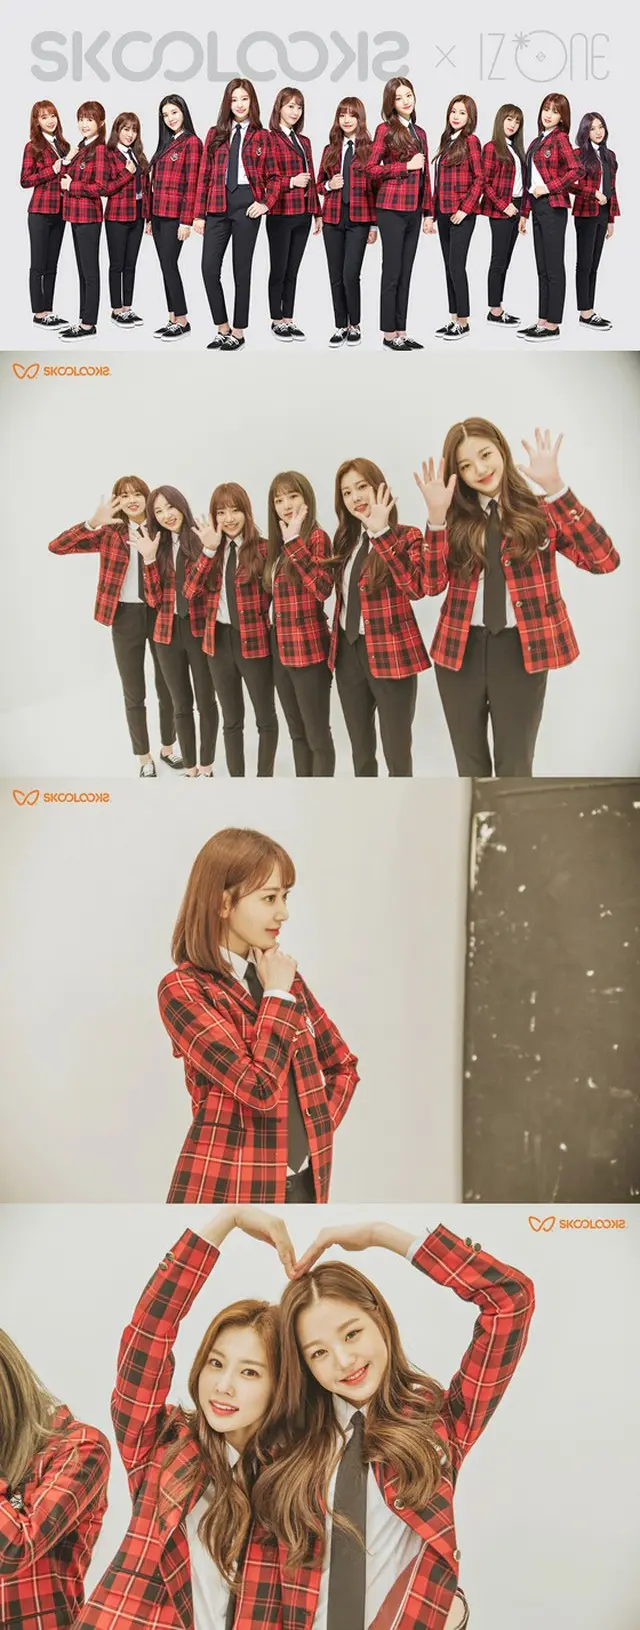 韓国学生服ブランドSKOOLOOKS、日韓ガールズグループ「IZ*ONE」を専属モデルに抜てき（提供:news1）